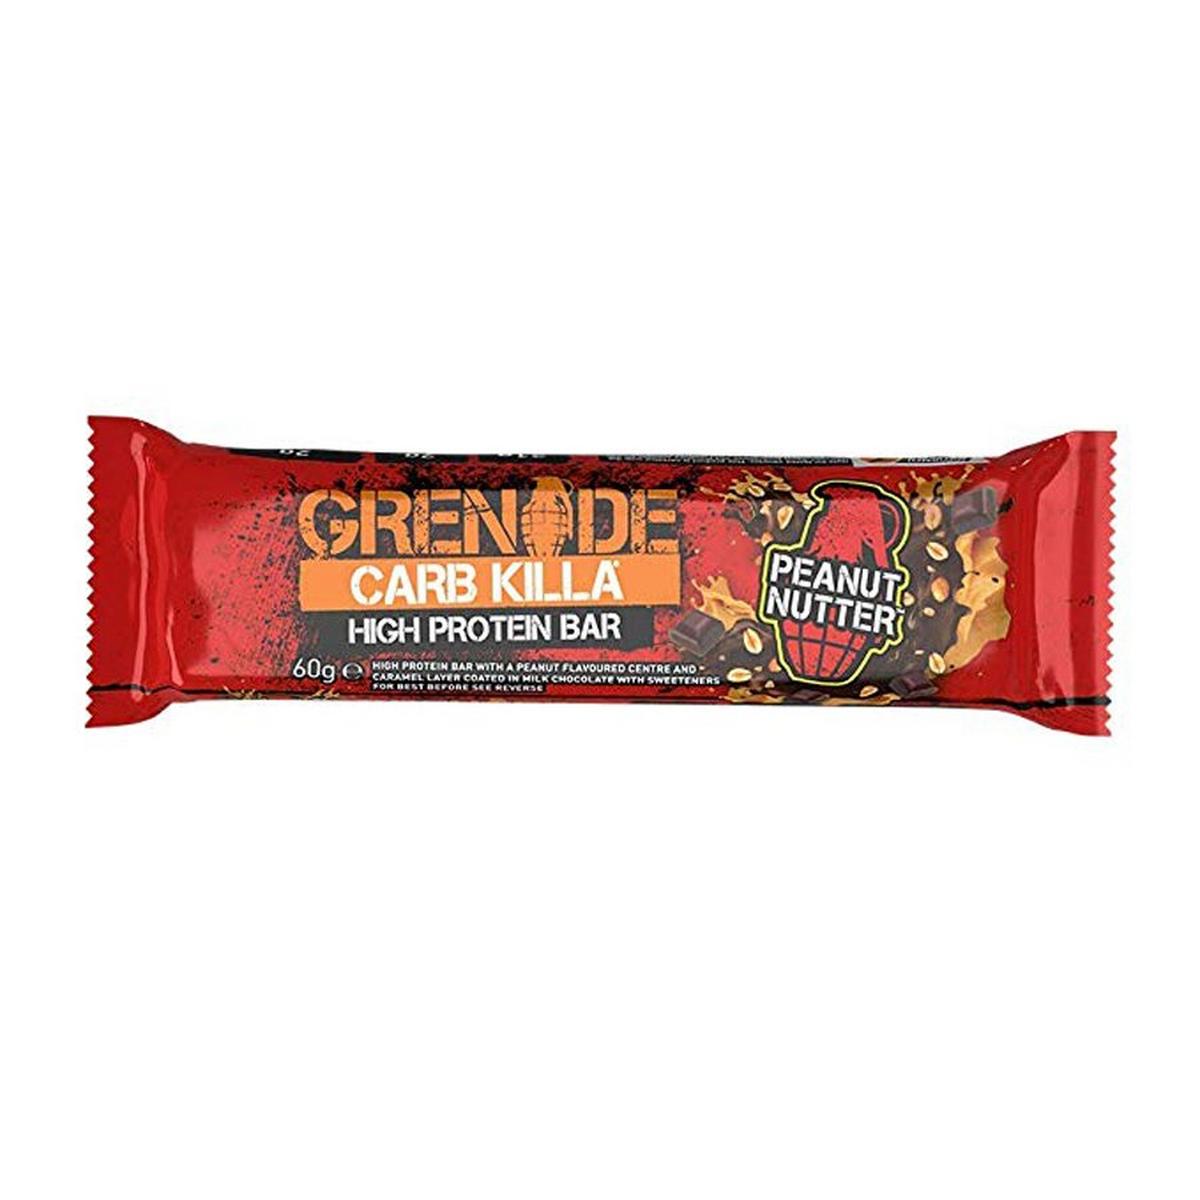 Grenade Carb Killa Protein Bar - Peanut Nutter